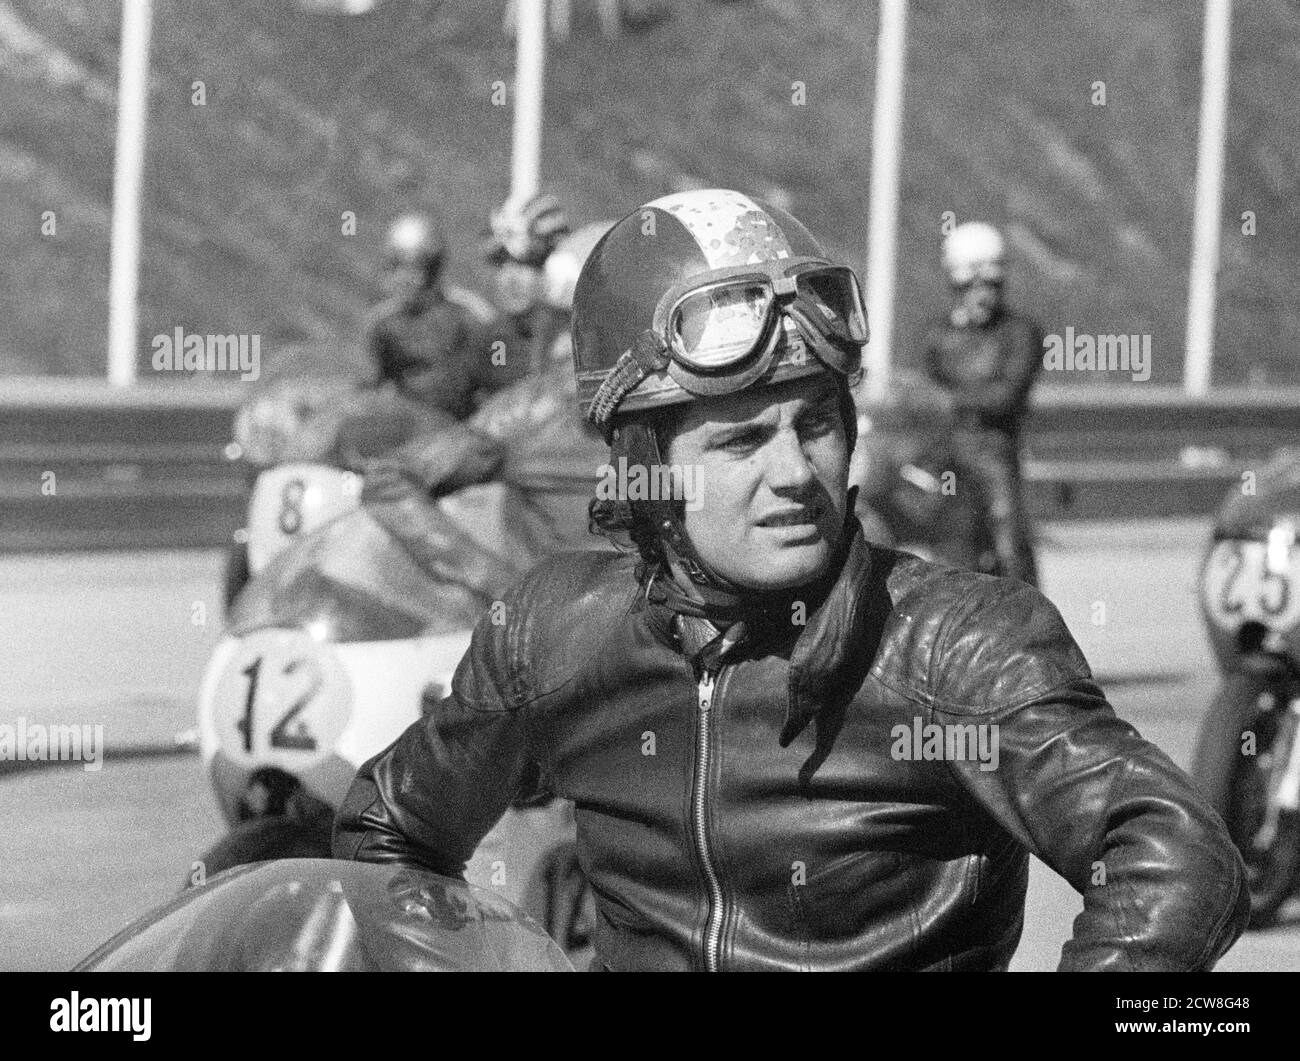 Giacomo Agostini am Start, Porträt, Salzburgring, Motorradrennen 1971 Banque D'Images